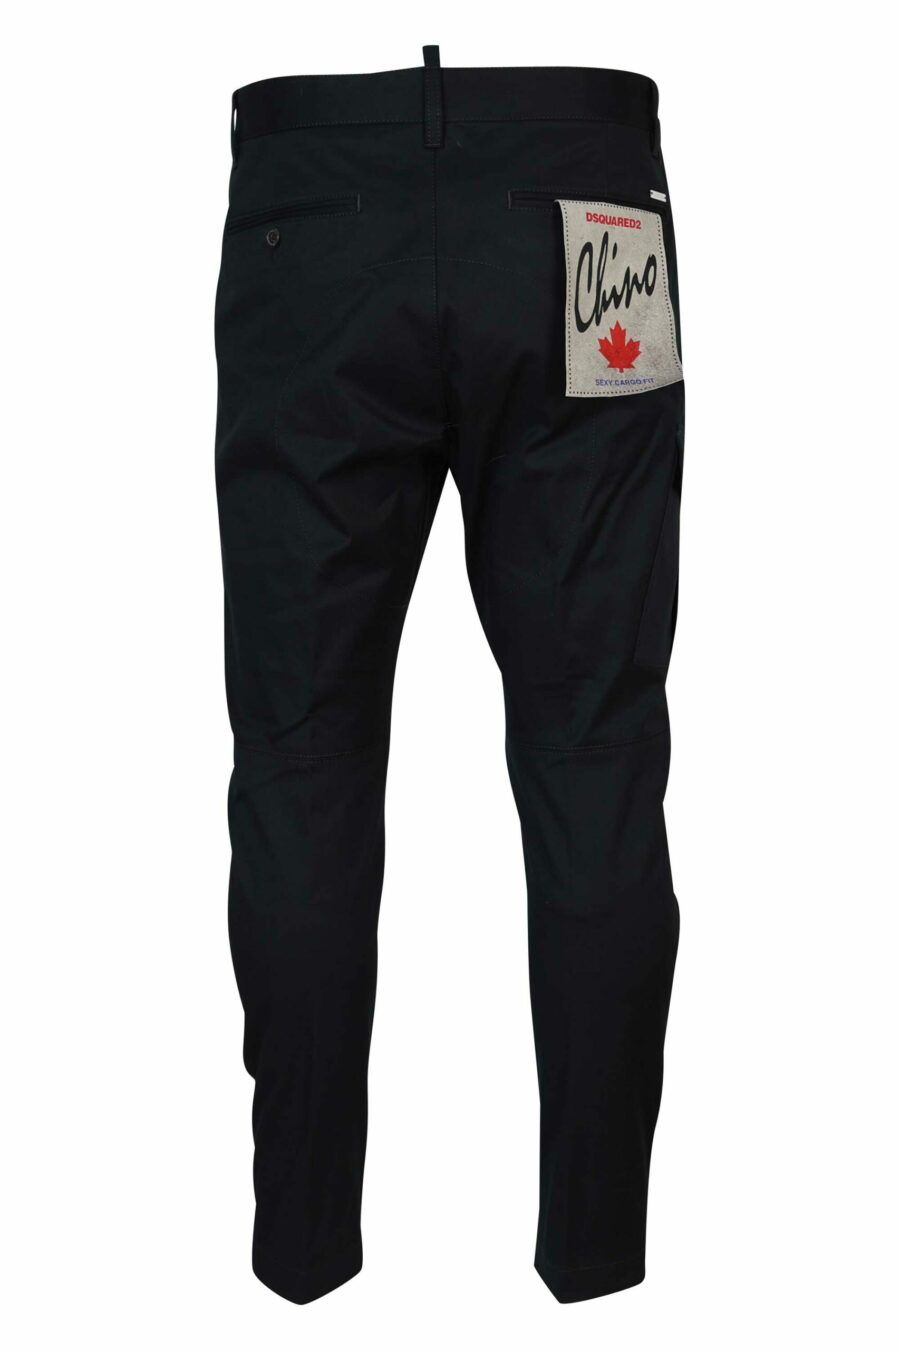 Pantalón negro estilo cargo "sexy cargo" - 8054148389000 2 scaled